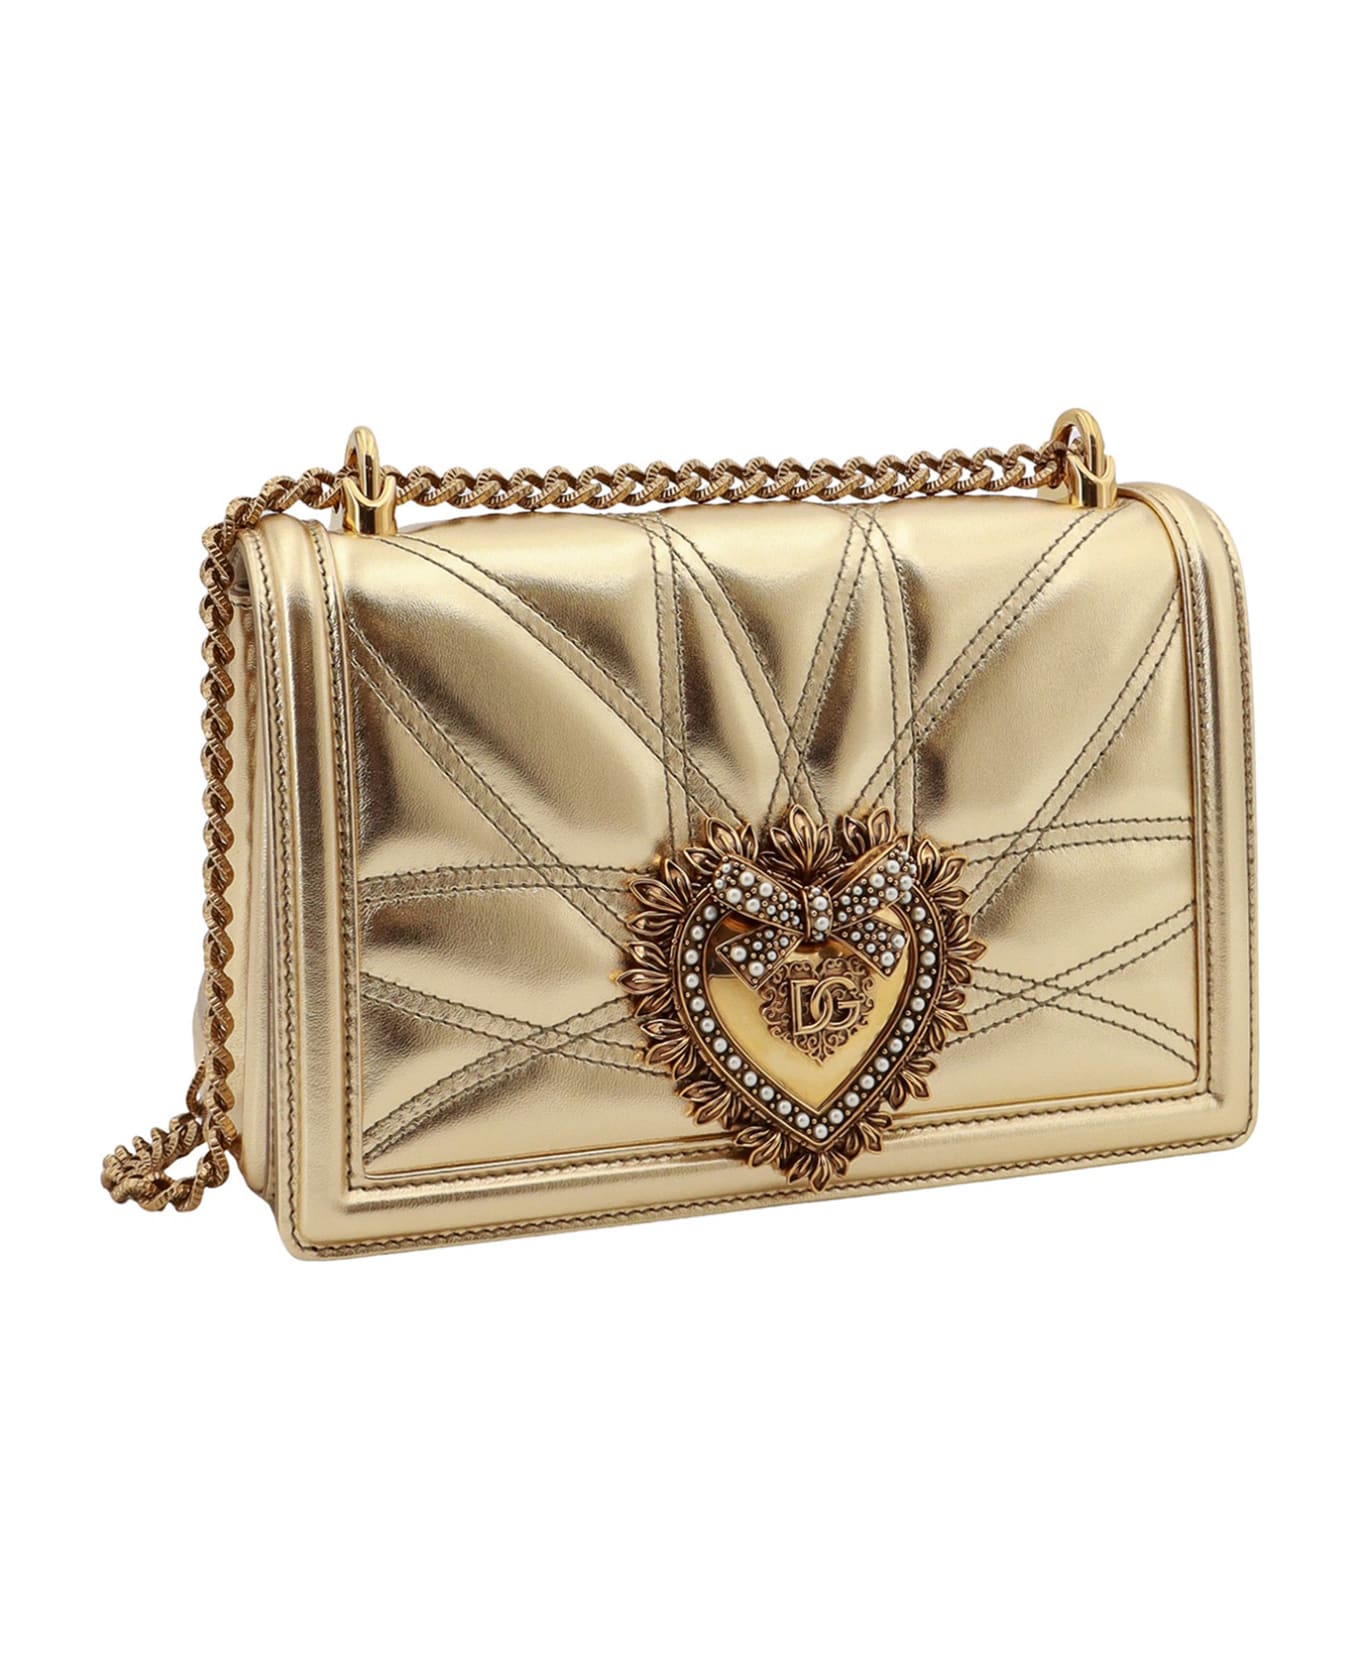 Dolce & Gabbana Devotion Shoulder Bag - Gold